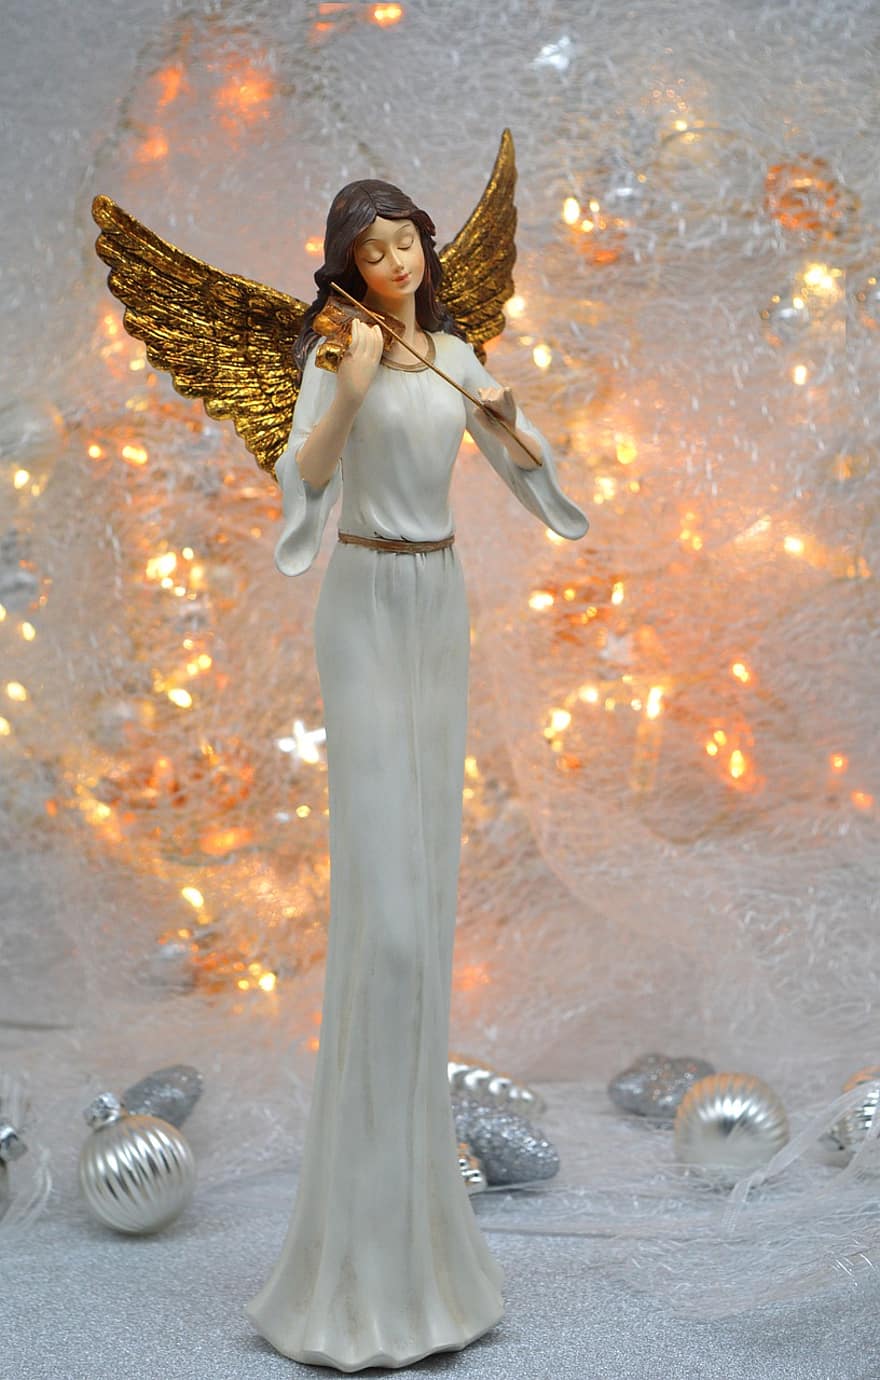 kerst engel, Kerstmis, lichten, kerst decoratie, viool, gouden vleugels, kersttijd, engel, kerst motief